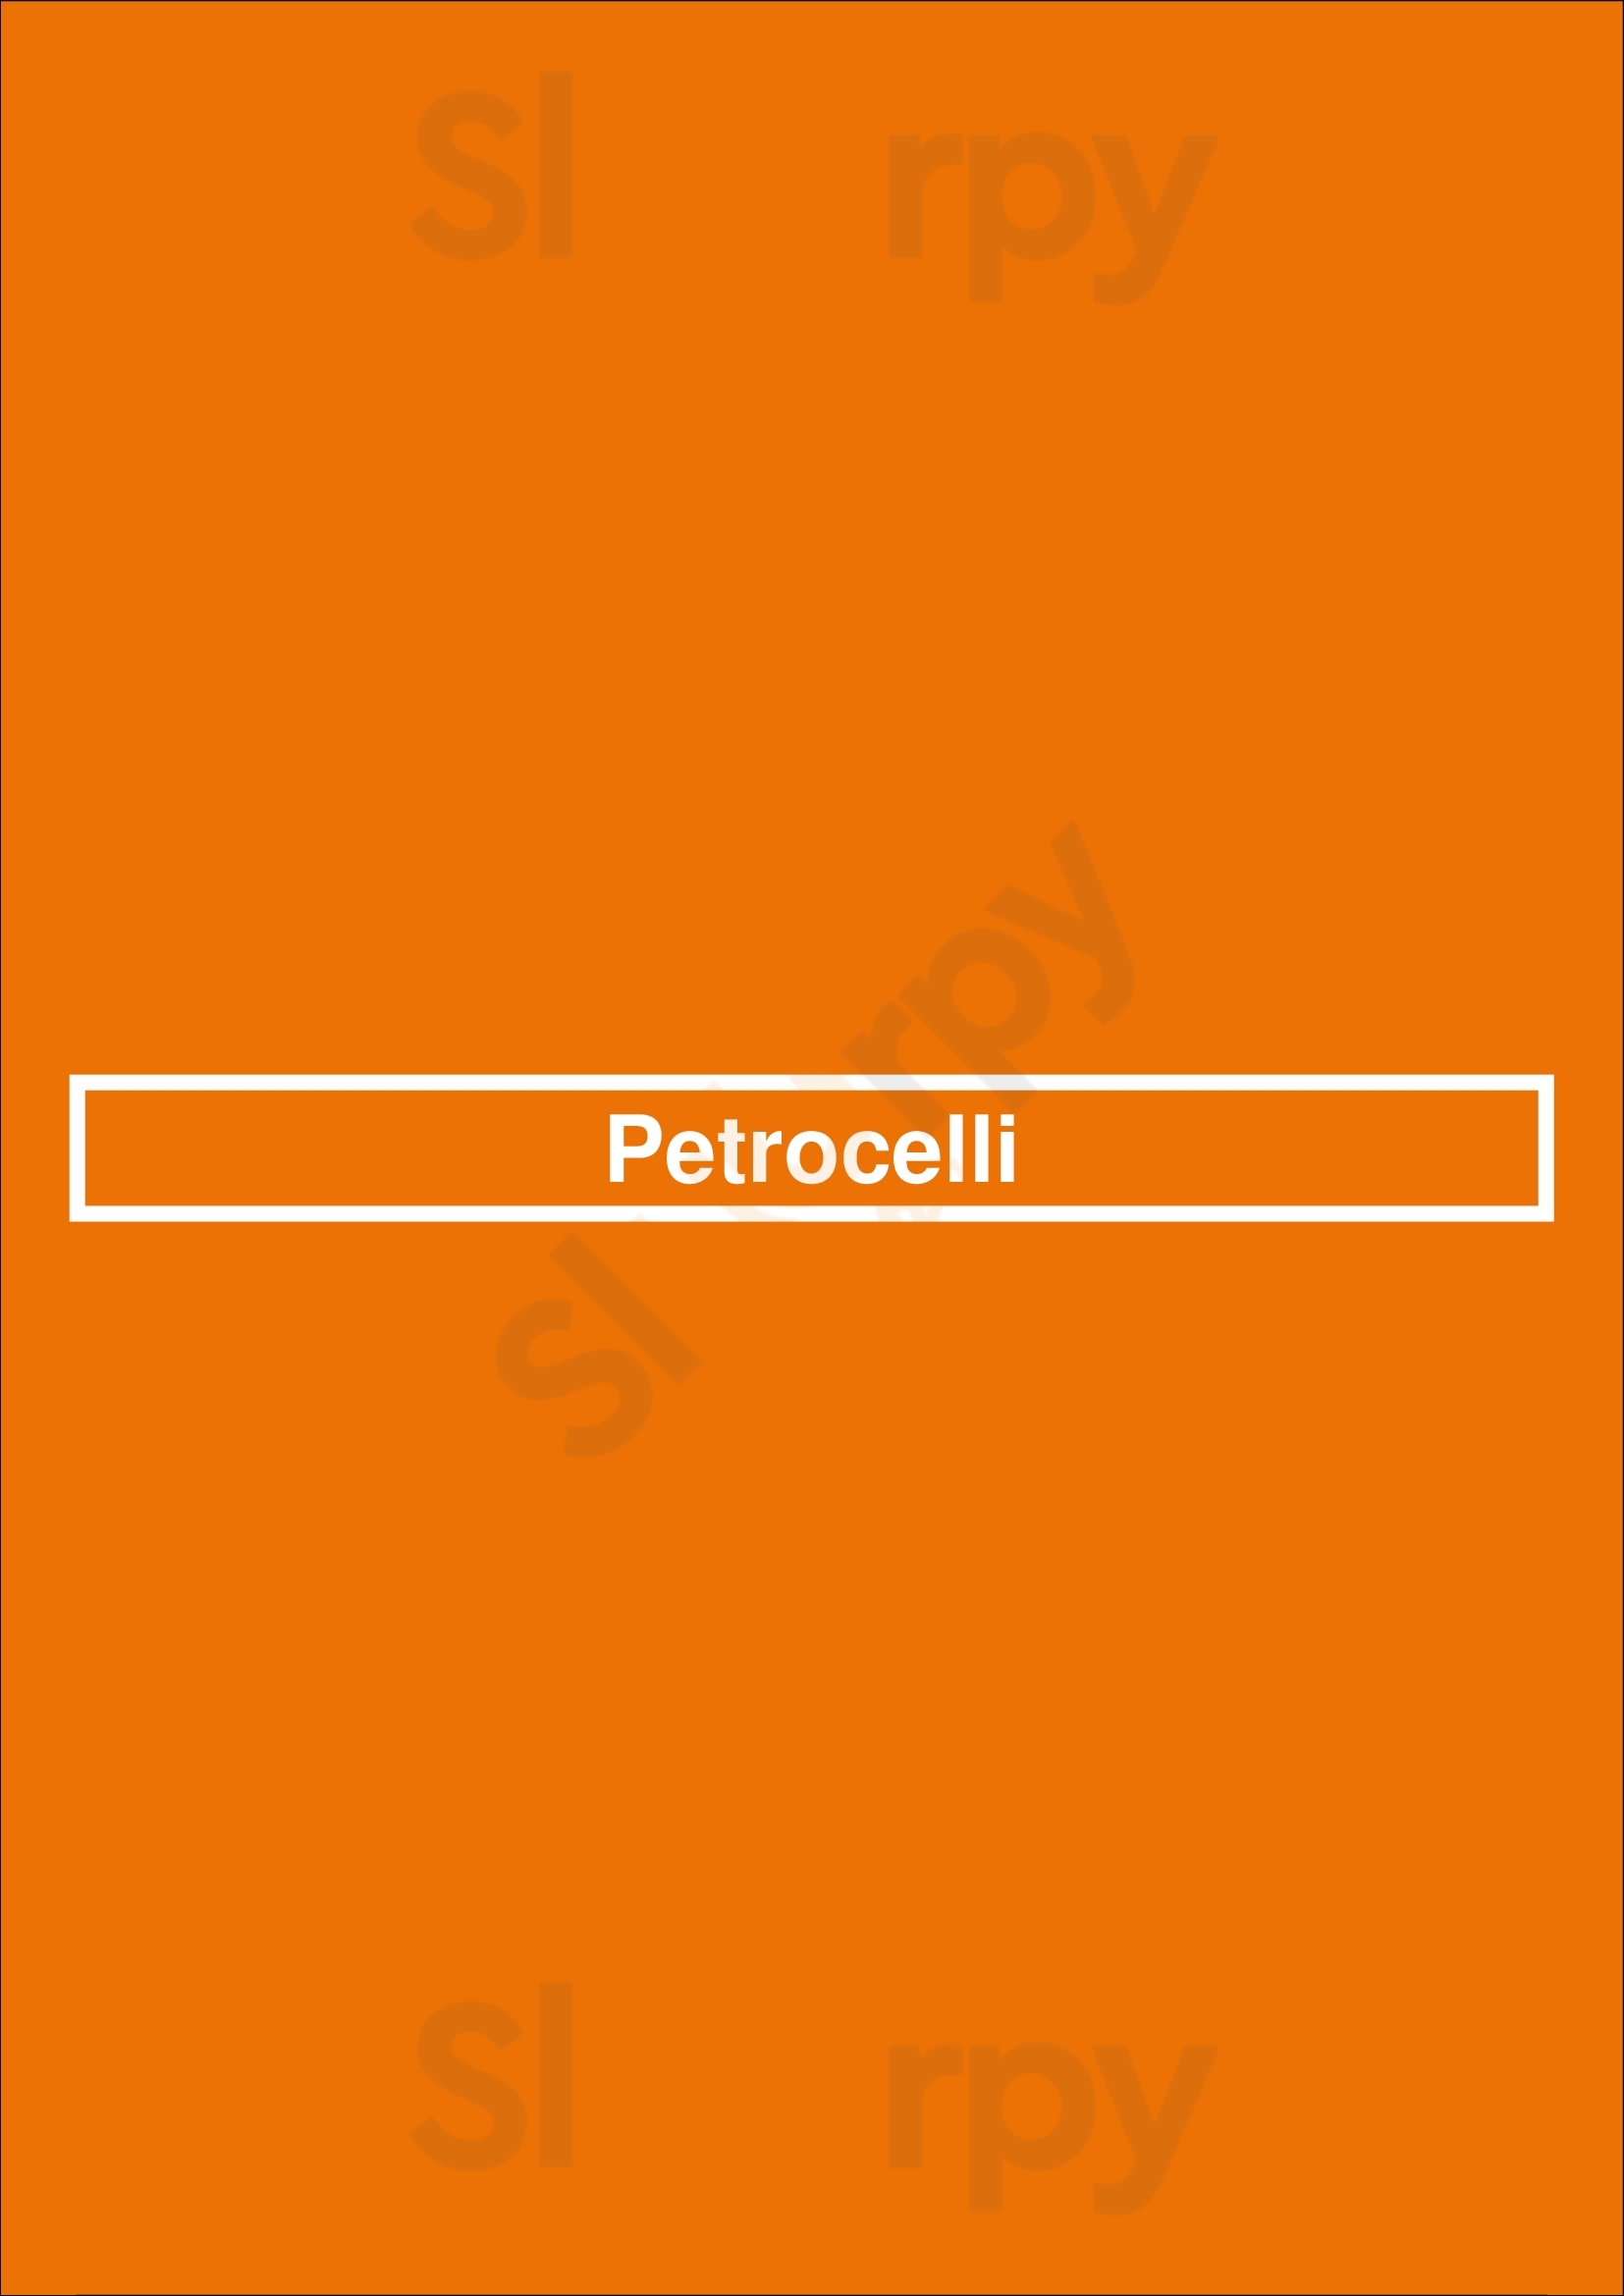 Petrocelli Berlin Menu - 1